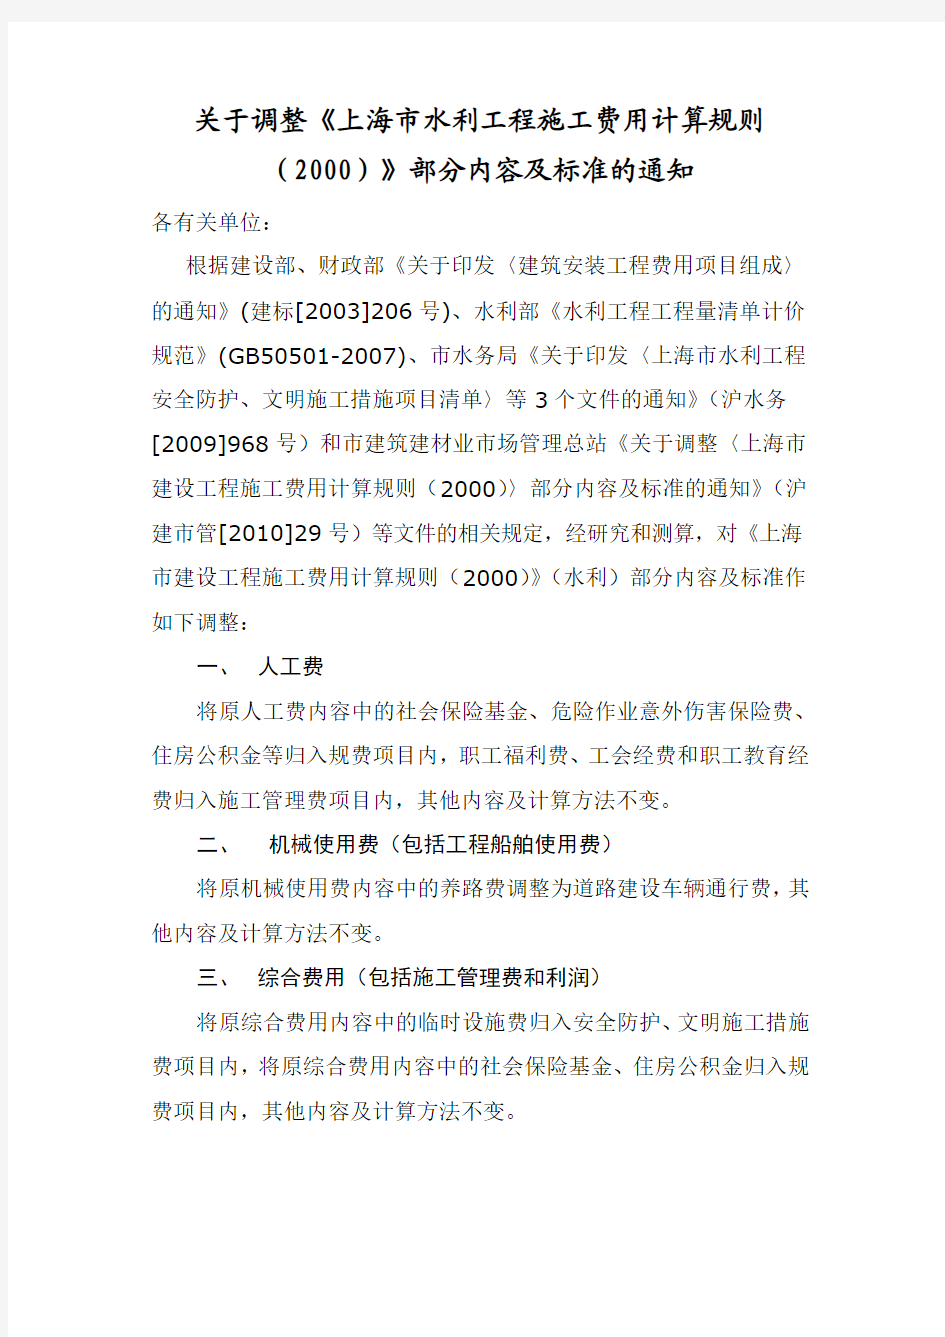 关于调整《上海市水利工程施工费用计算规则(2000)》部分内容及标准的通知